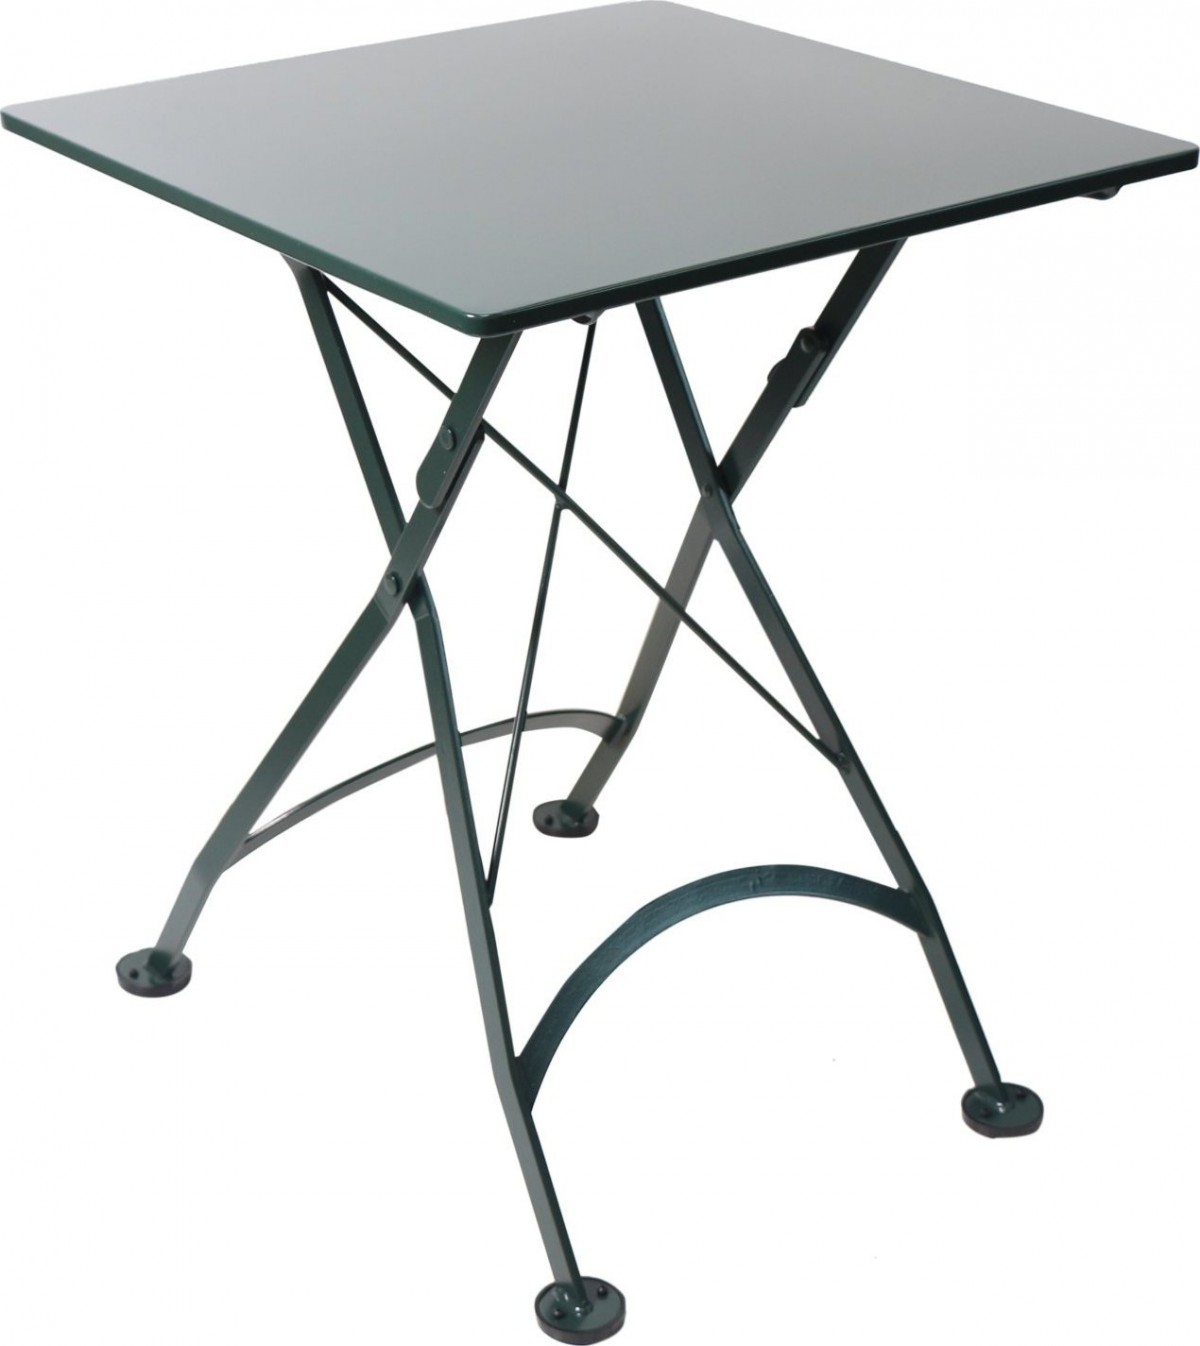 Furniture DesignHouse 24″ Square Folding Bistro Table